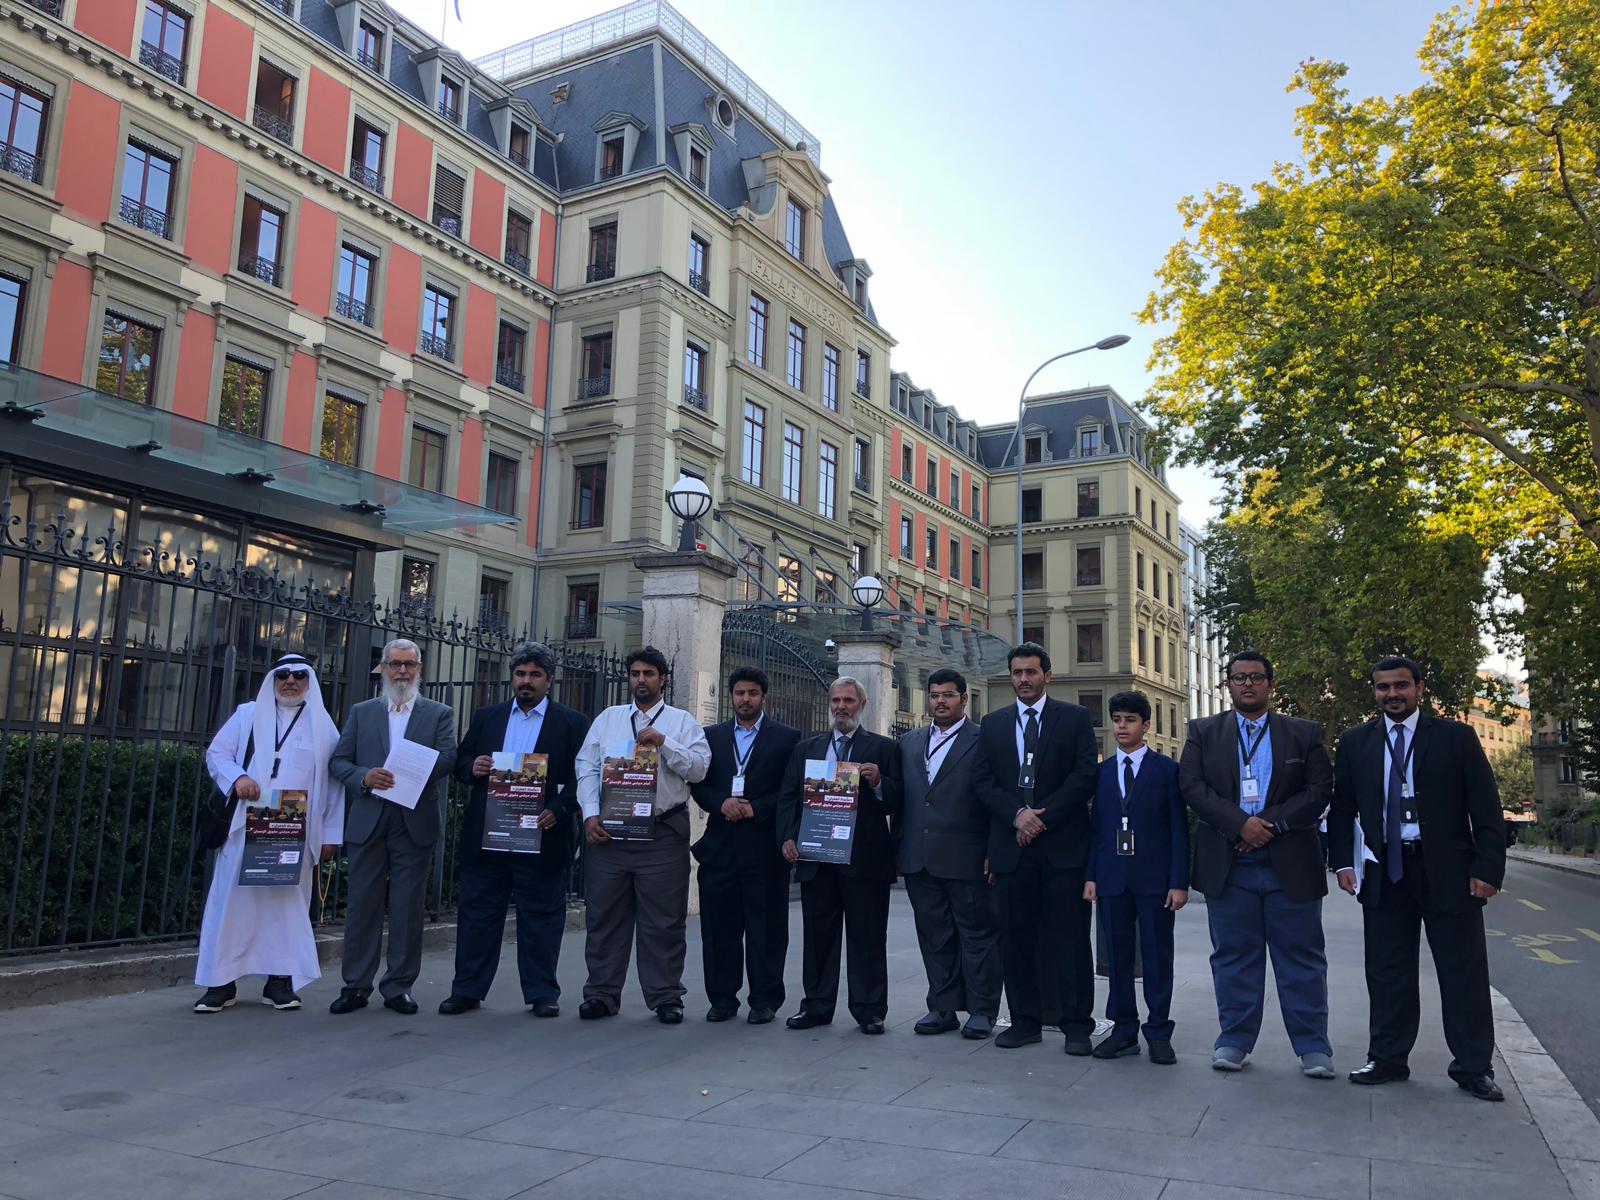   صور وفيديو|| قبيلة الغفران تنظم وقفة أمام الأمم المتحدة في جنيف للمطالبة باستعادة جنسيتهم ومحاسبة النظام القطري